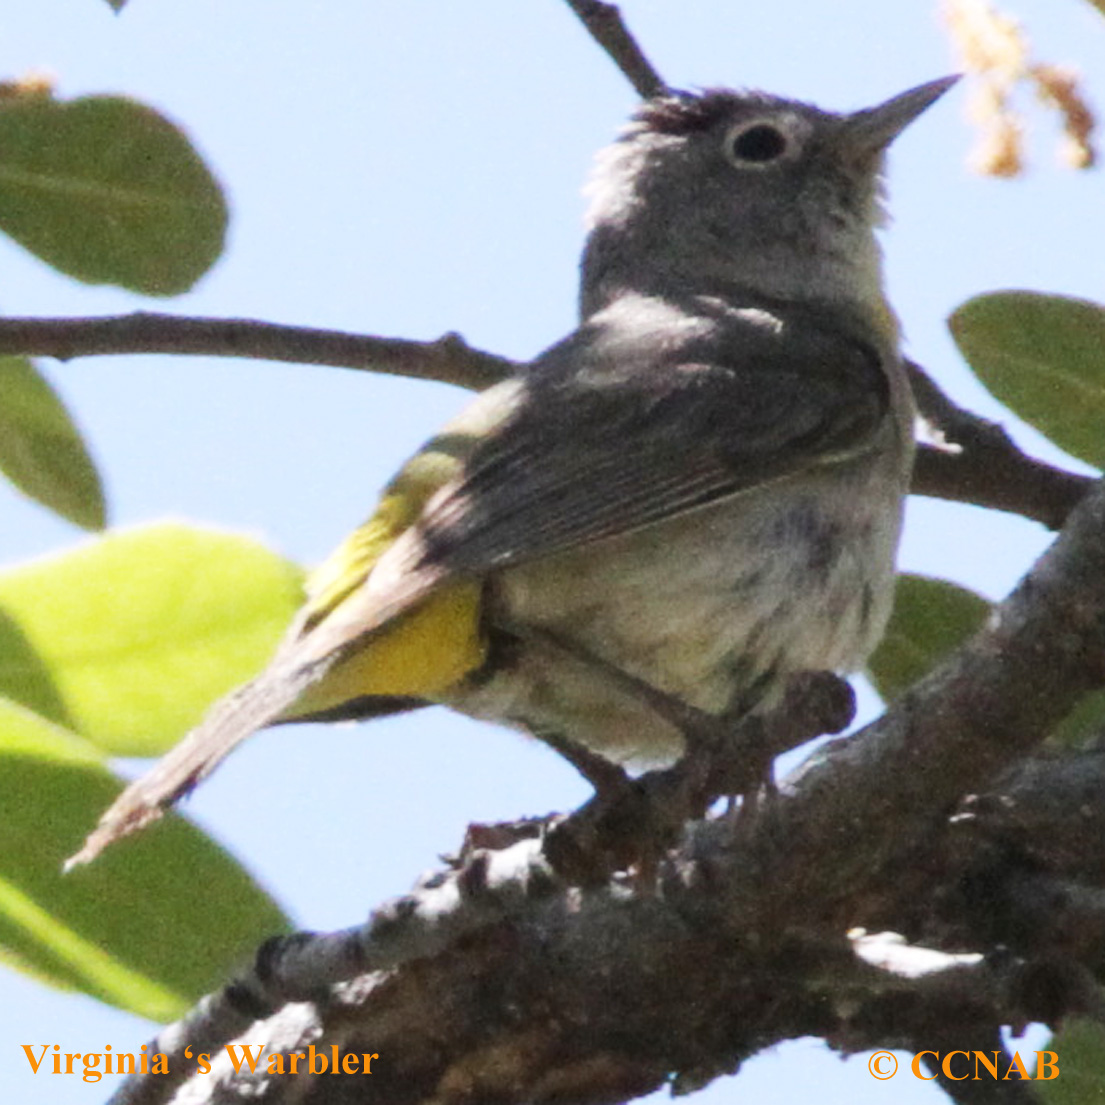 Virginia's Warbler